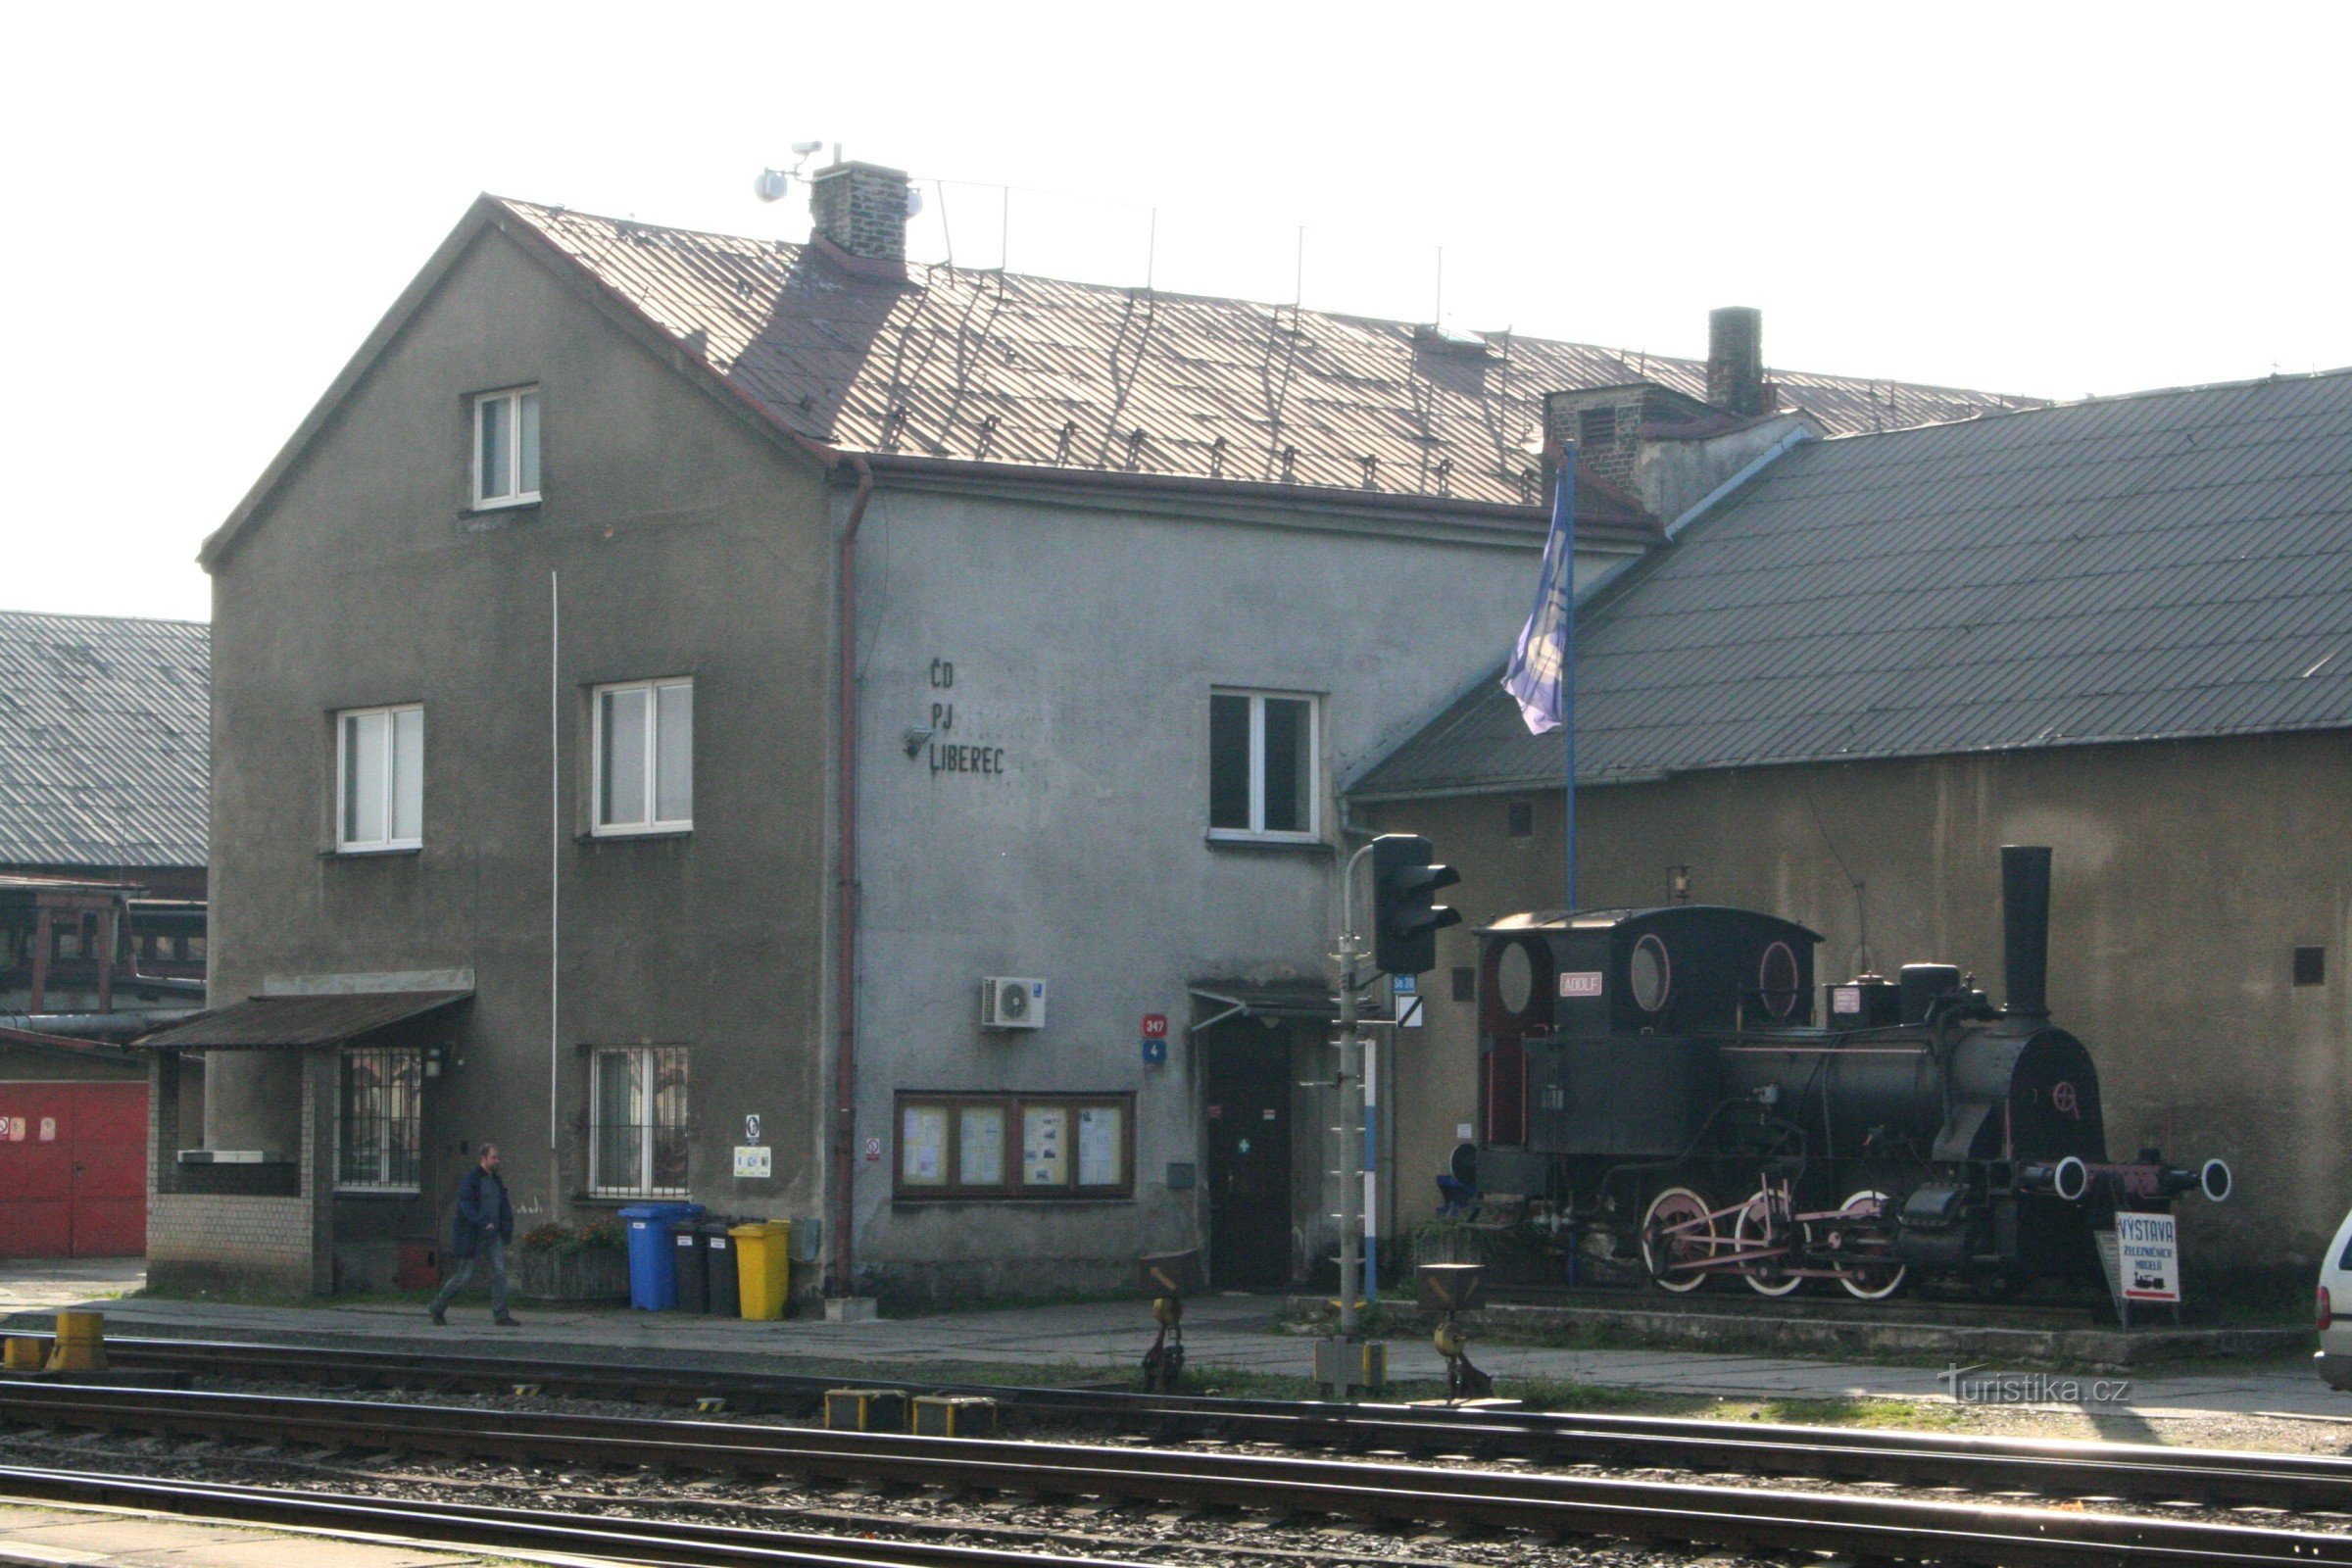 Pomnik kolejowy - lokomotywa parowa Adolf